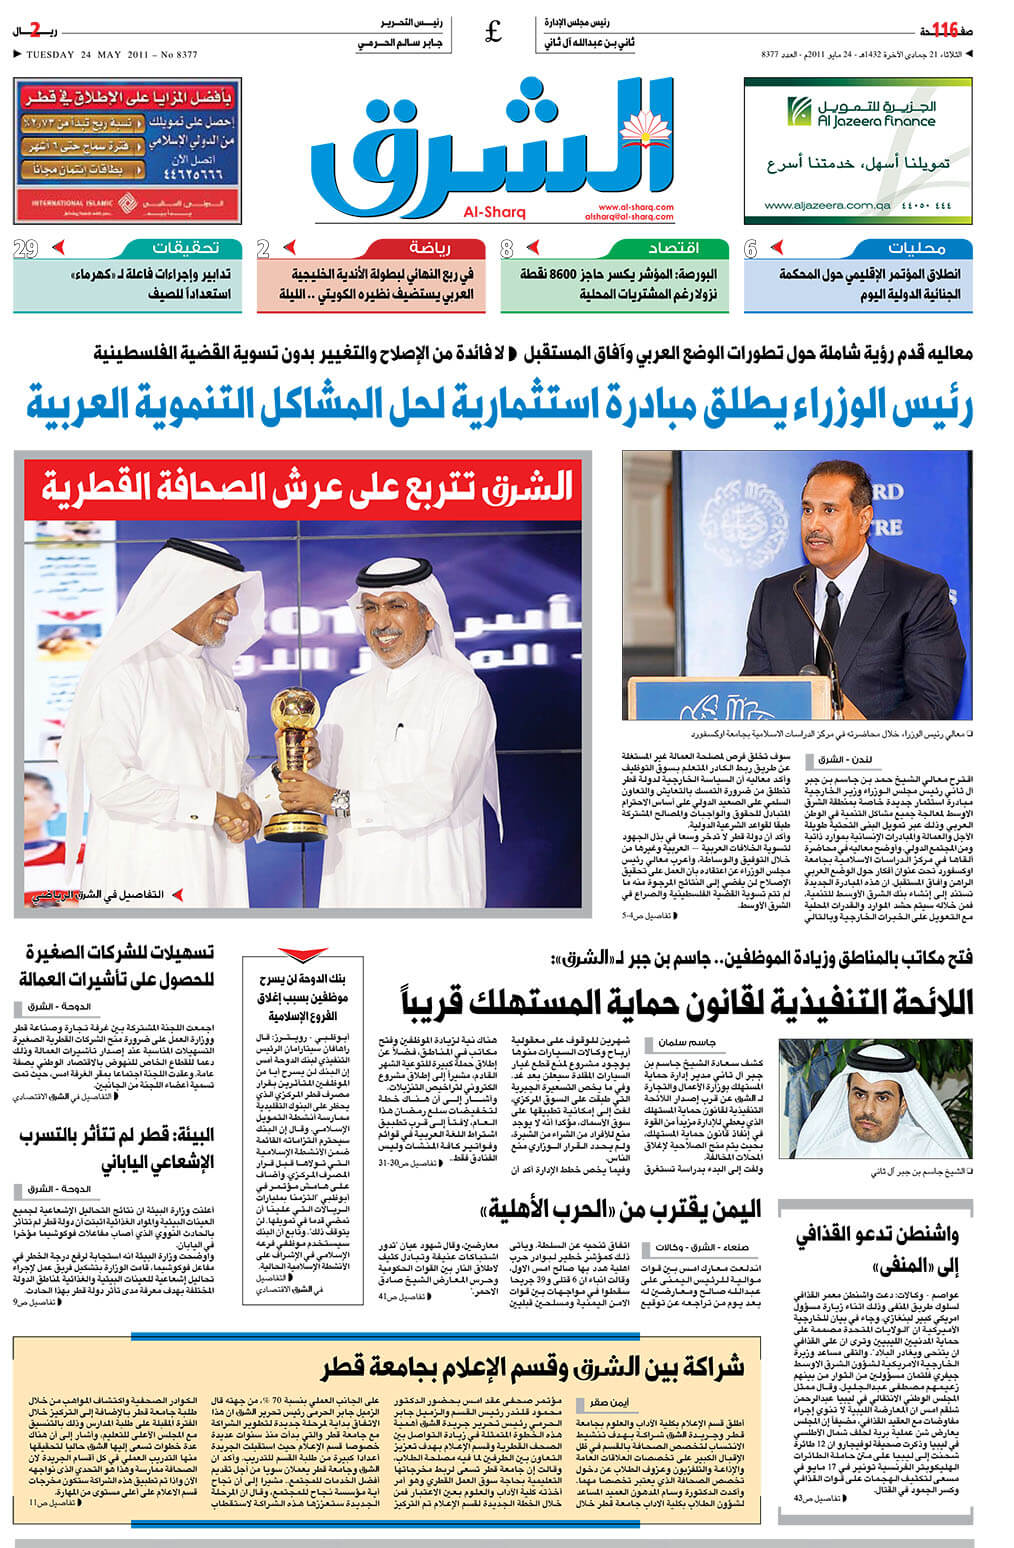 Qatar Newspapers 04 Al Sharq